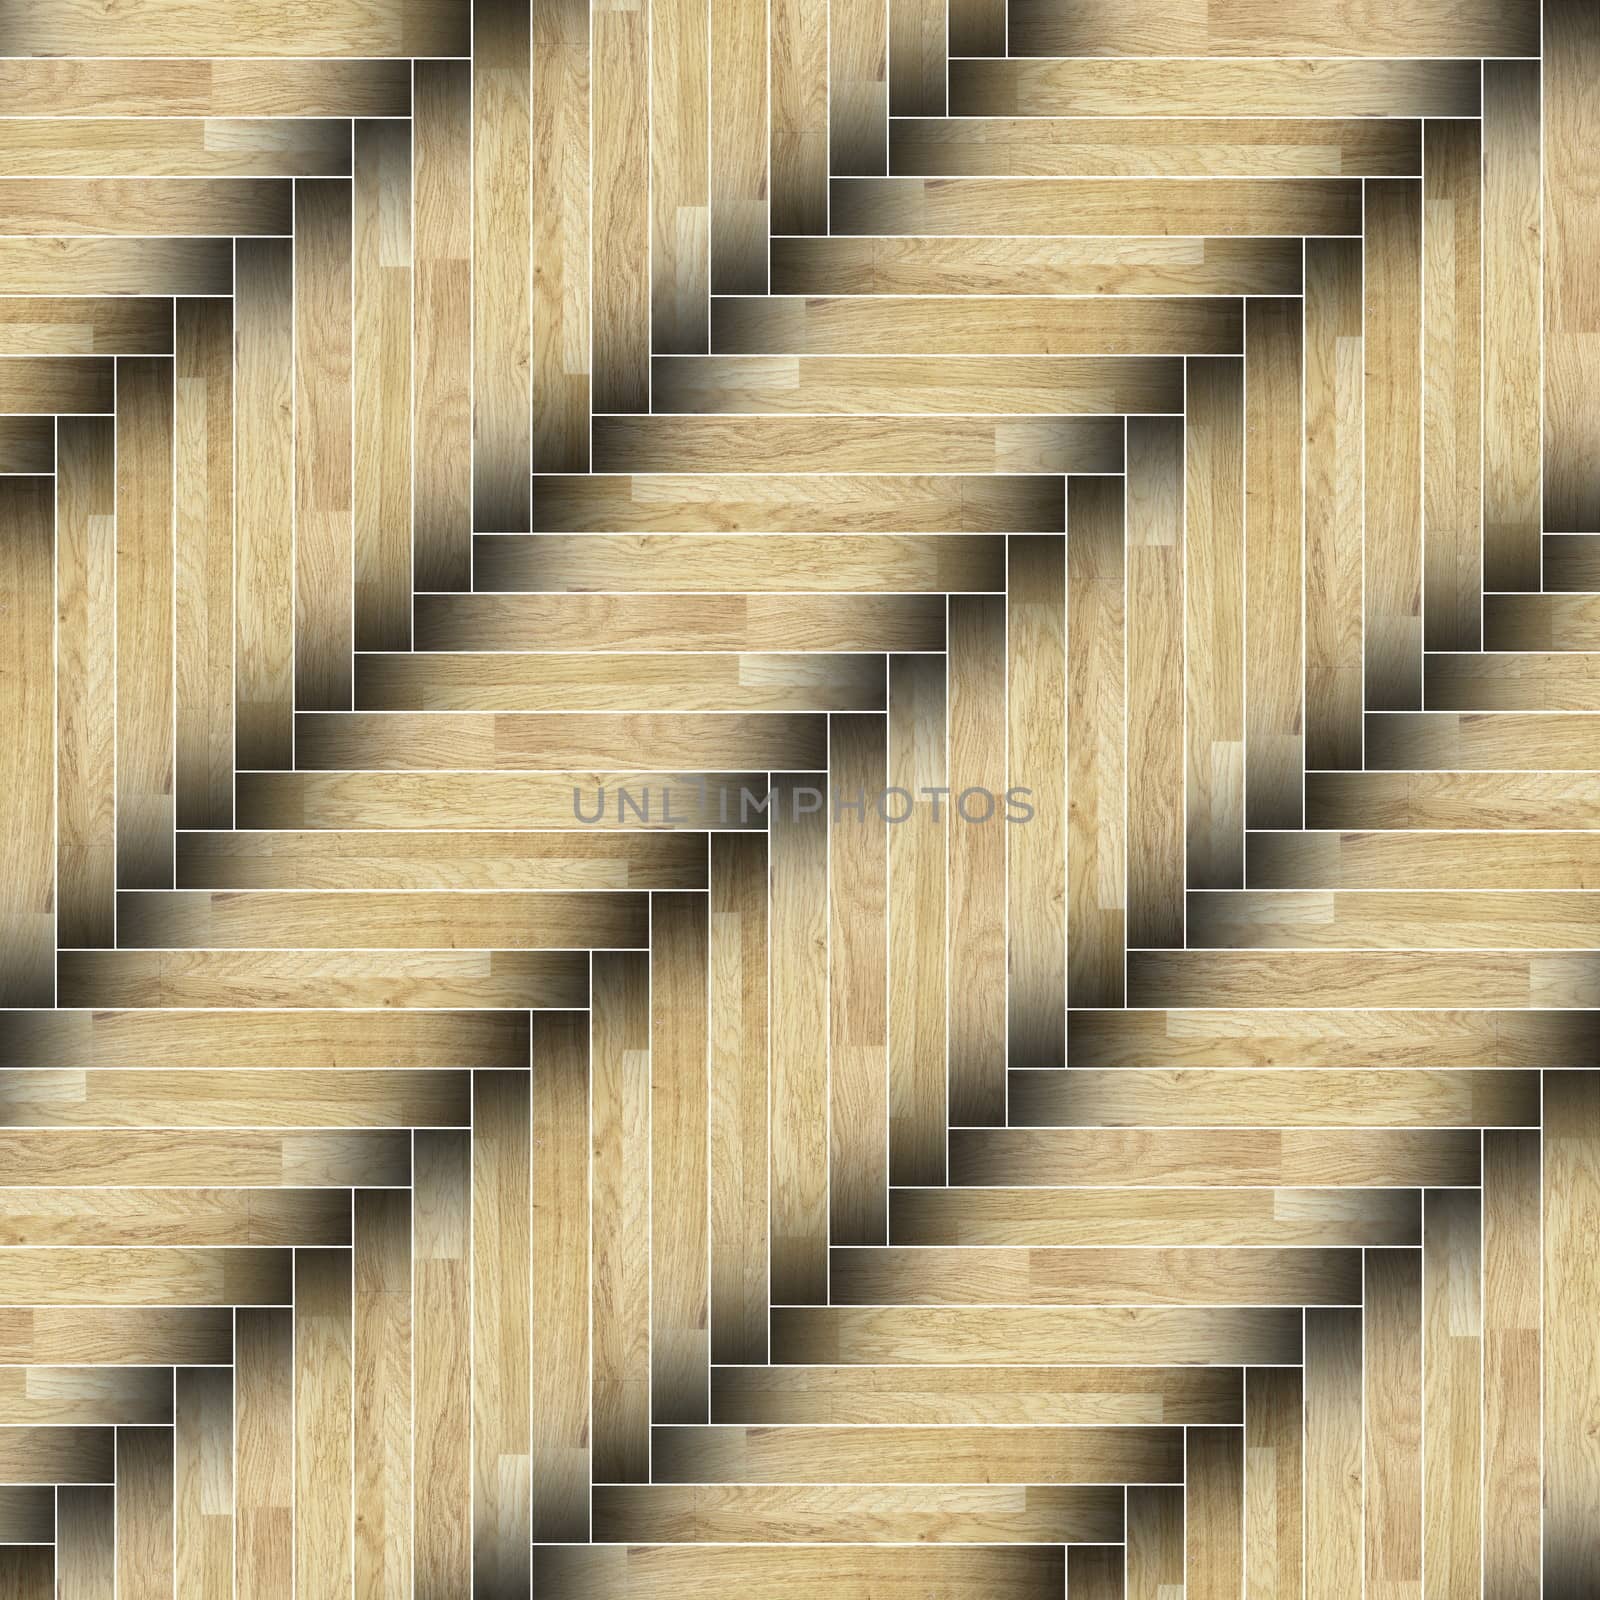 textured of installed parquet floor by taviphoto